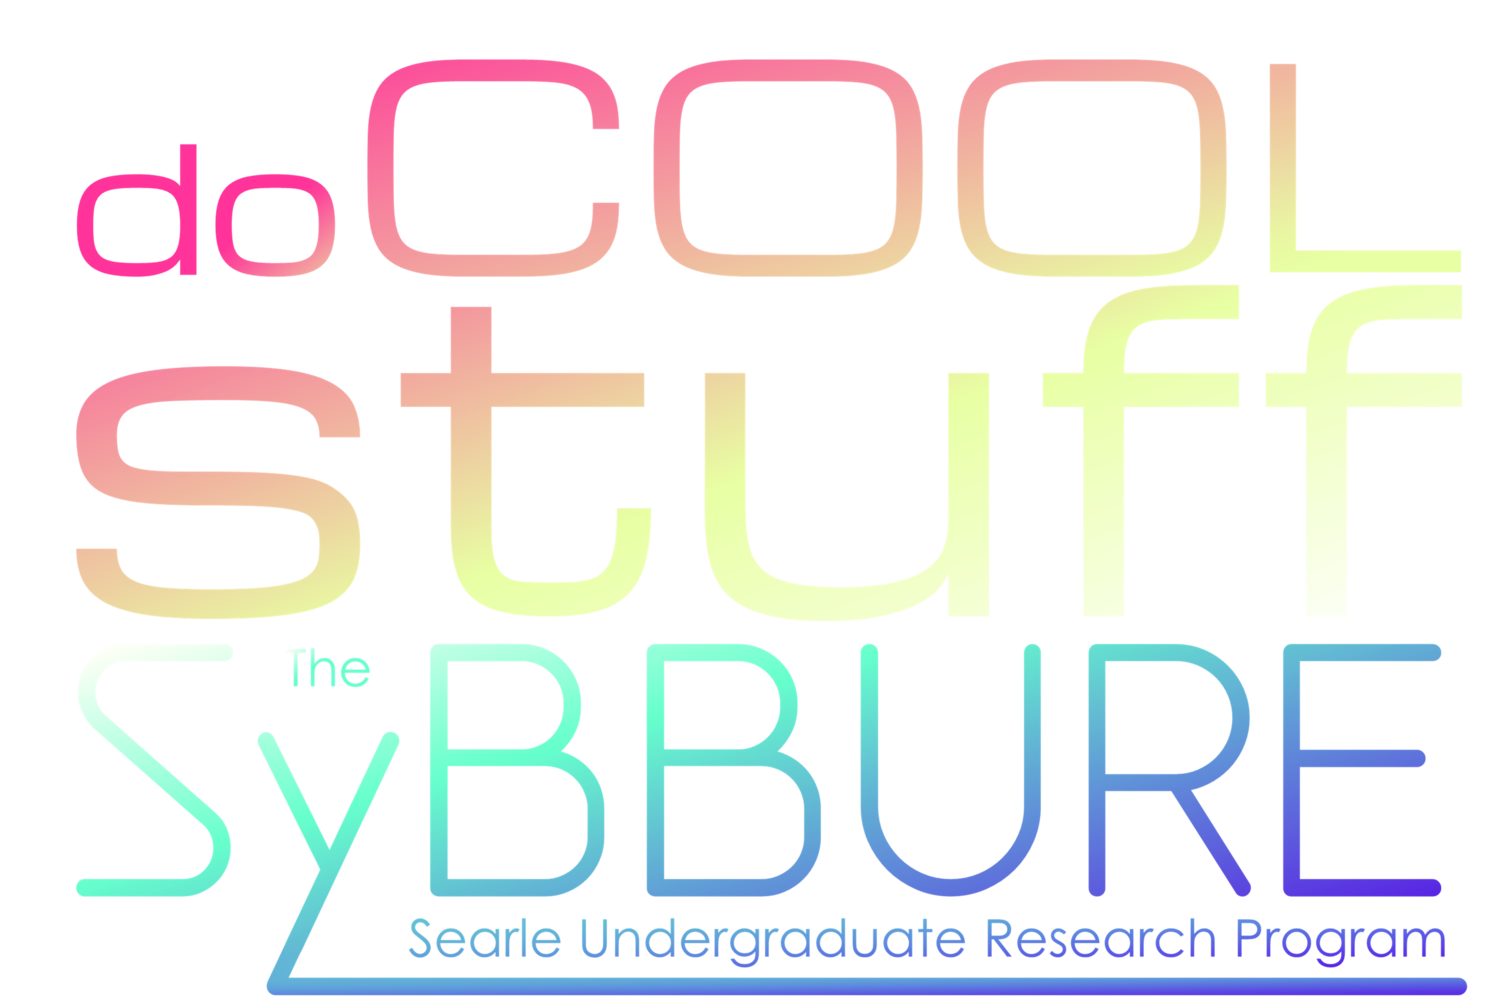 The SyBBURE Searle Undergraduate Research Program